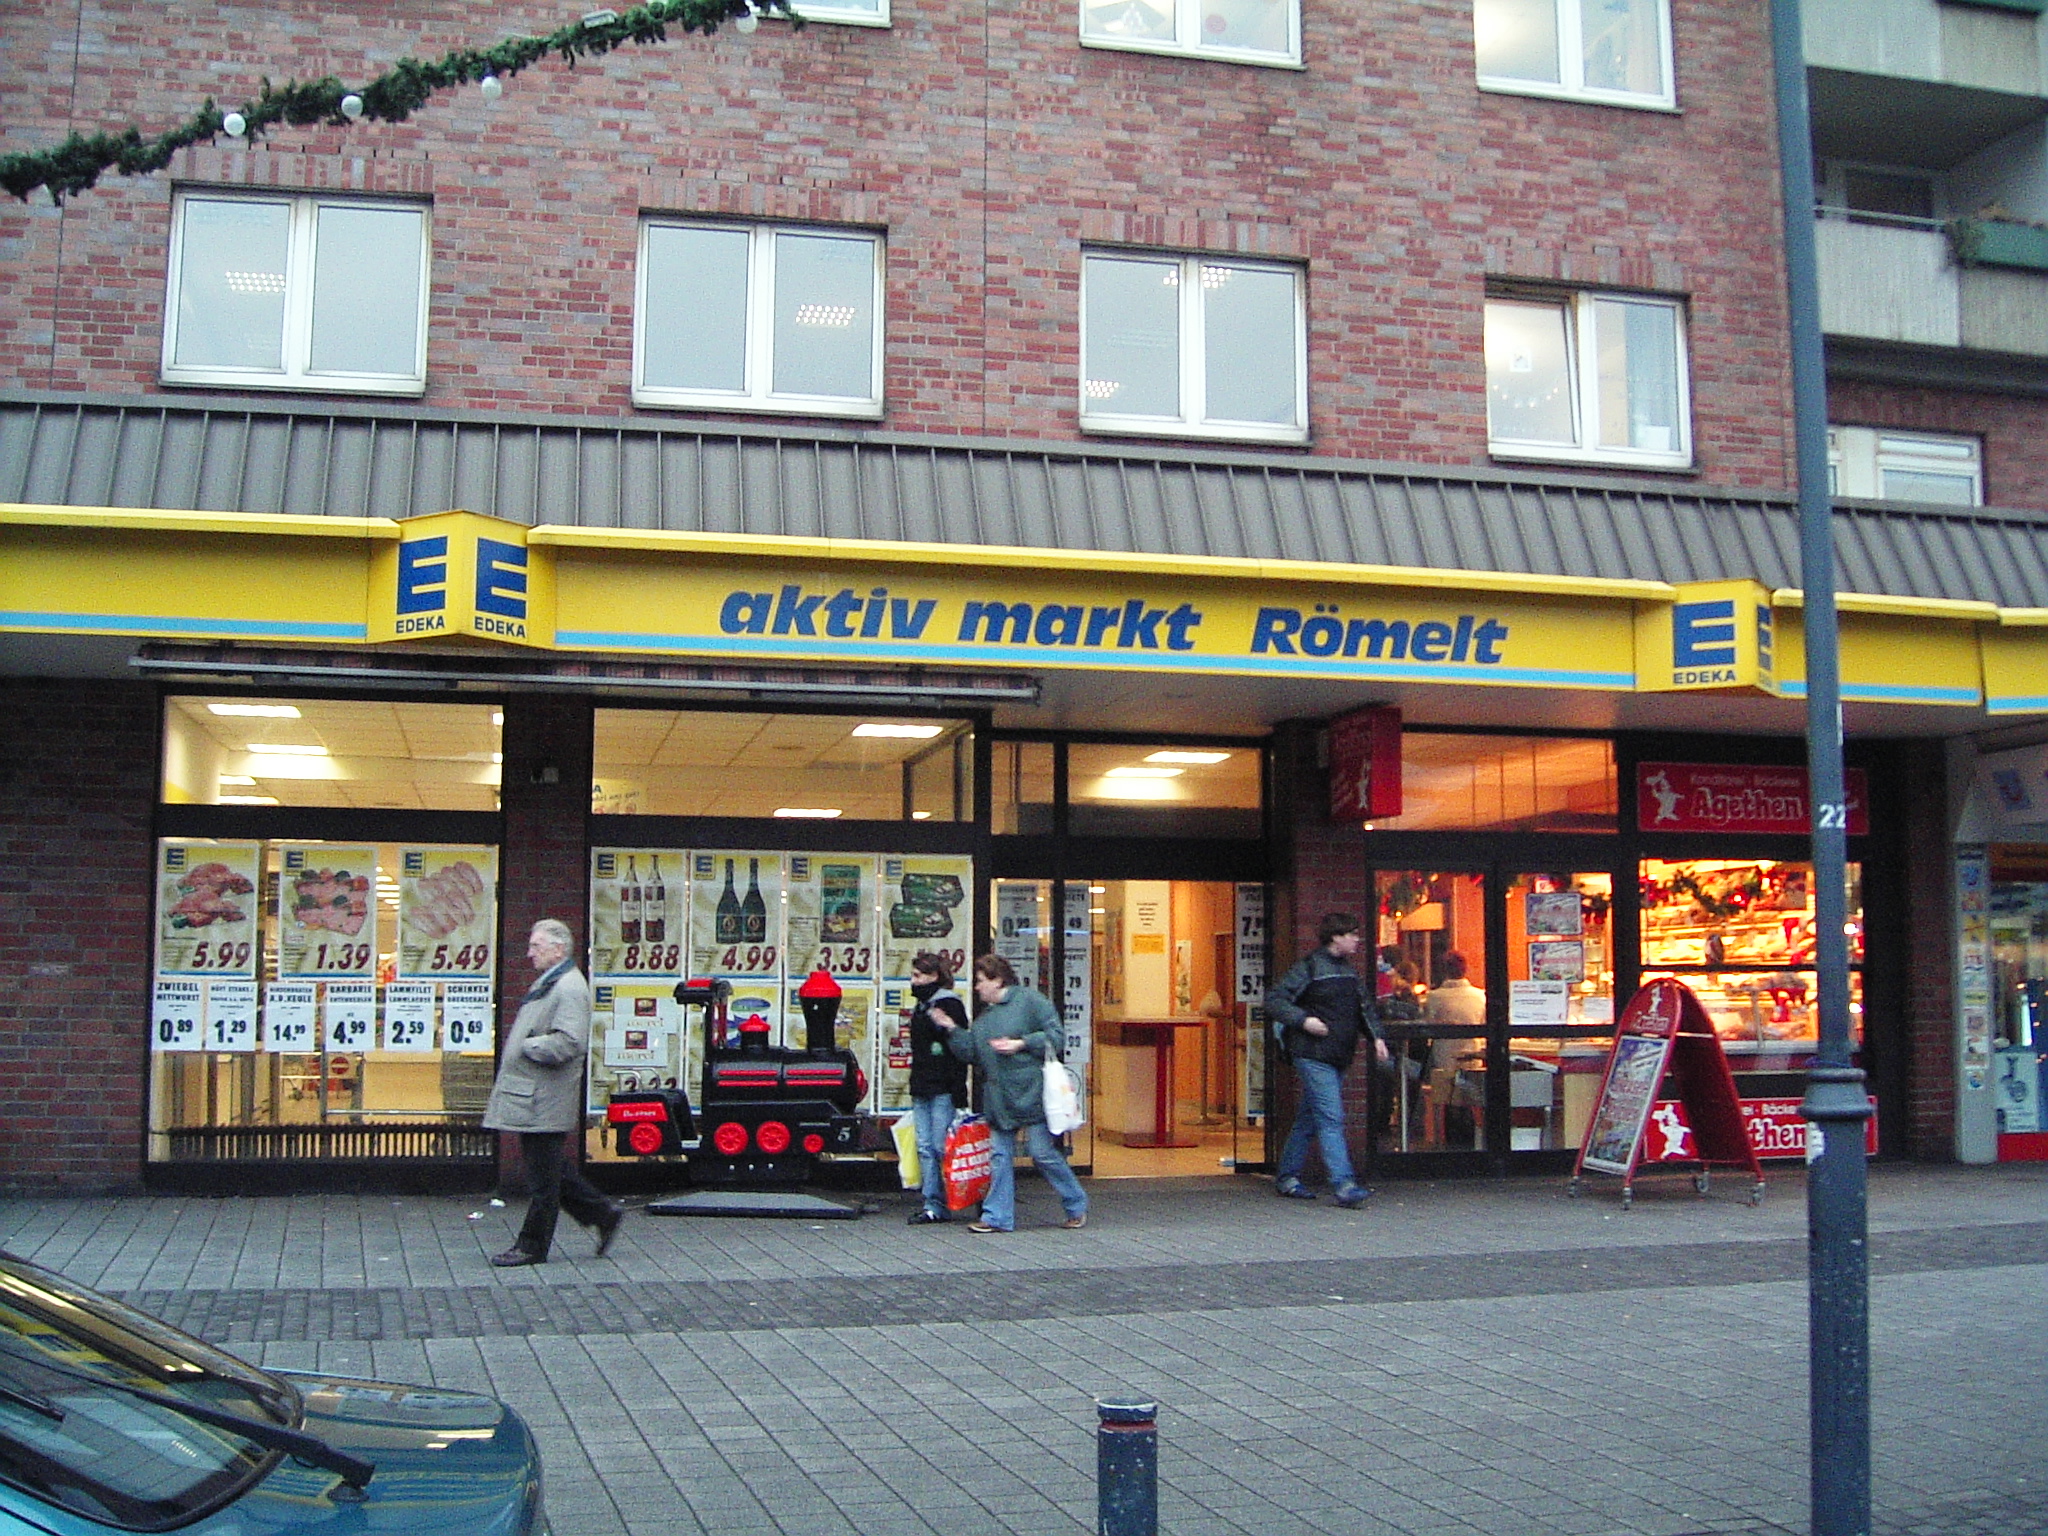 Food retailer in Germany, Edeka 